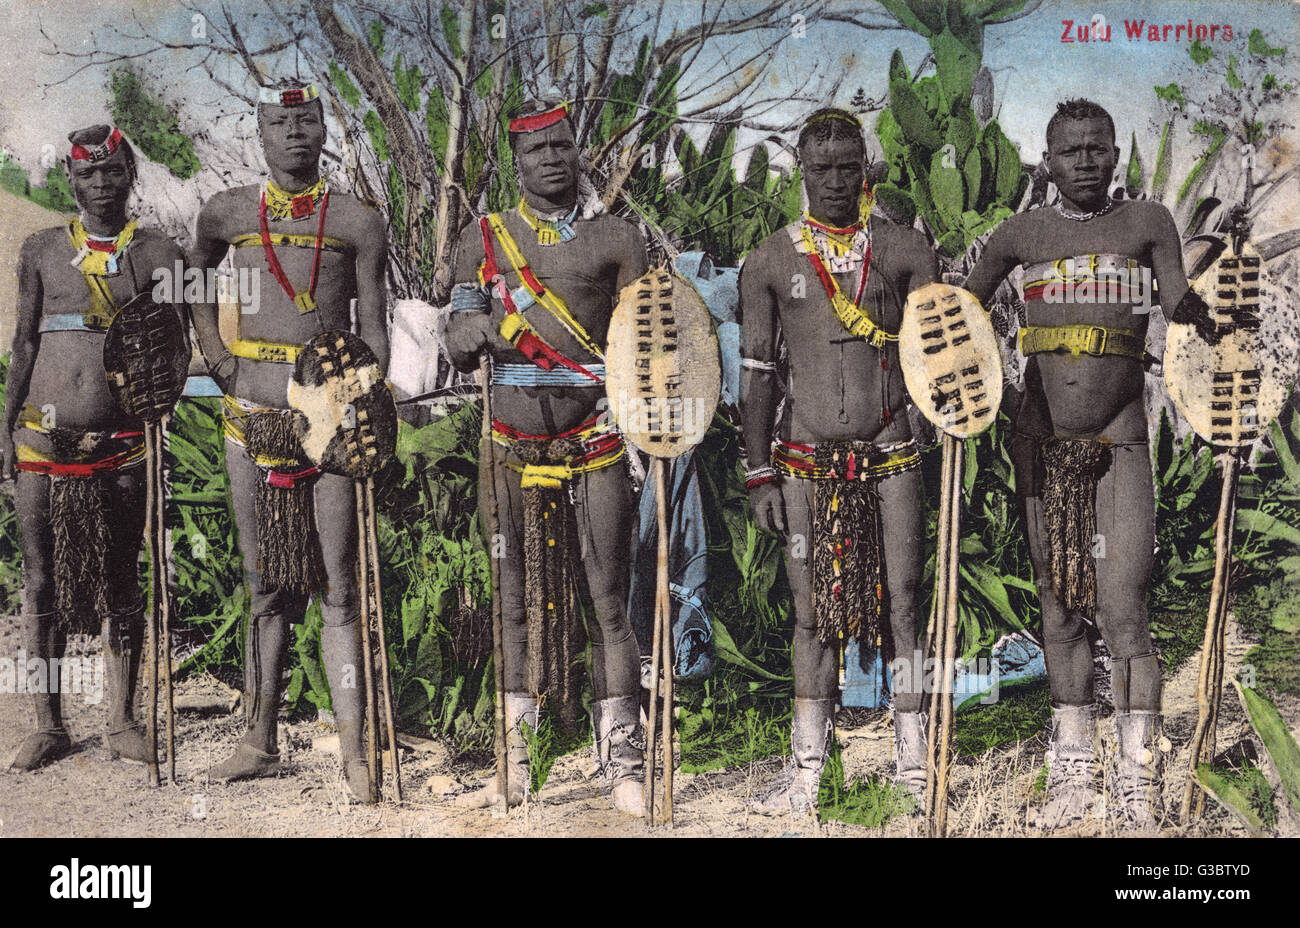 Les guerriers zoulous - Afrique Australe Banque D'Images